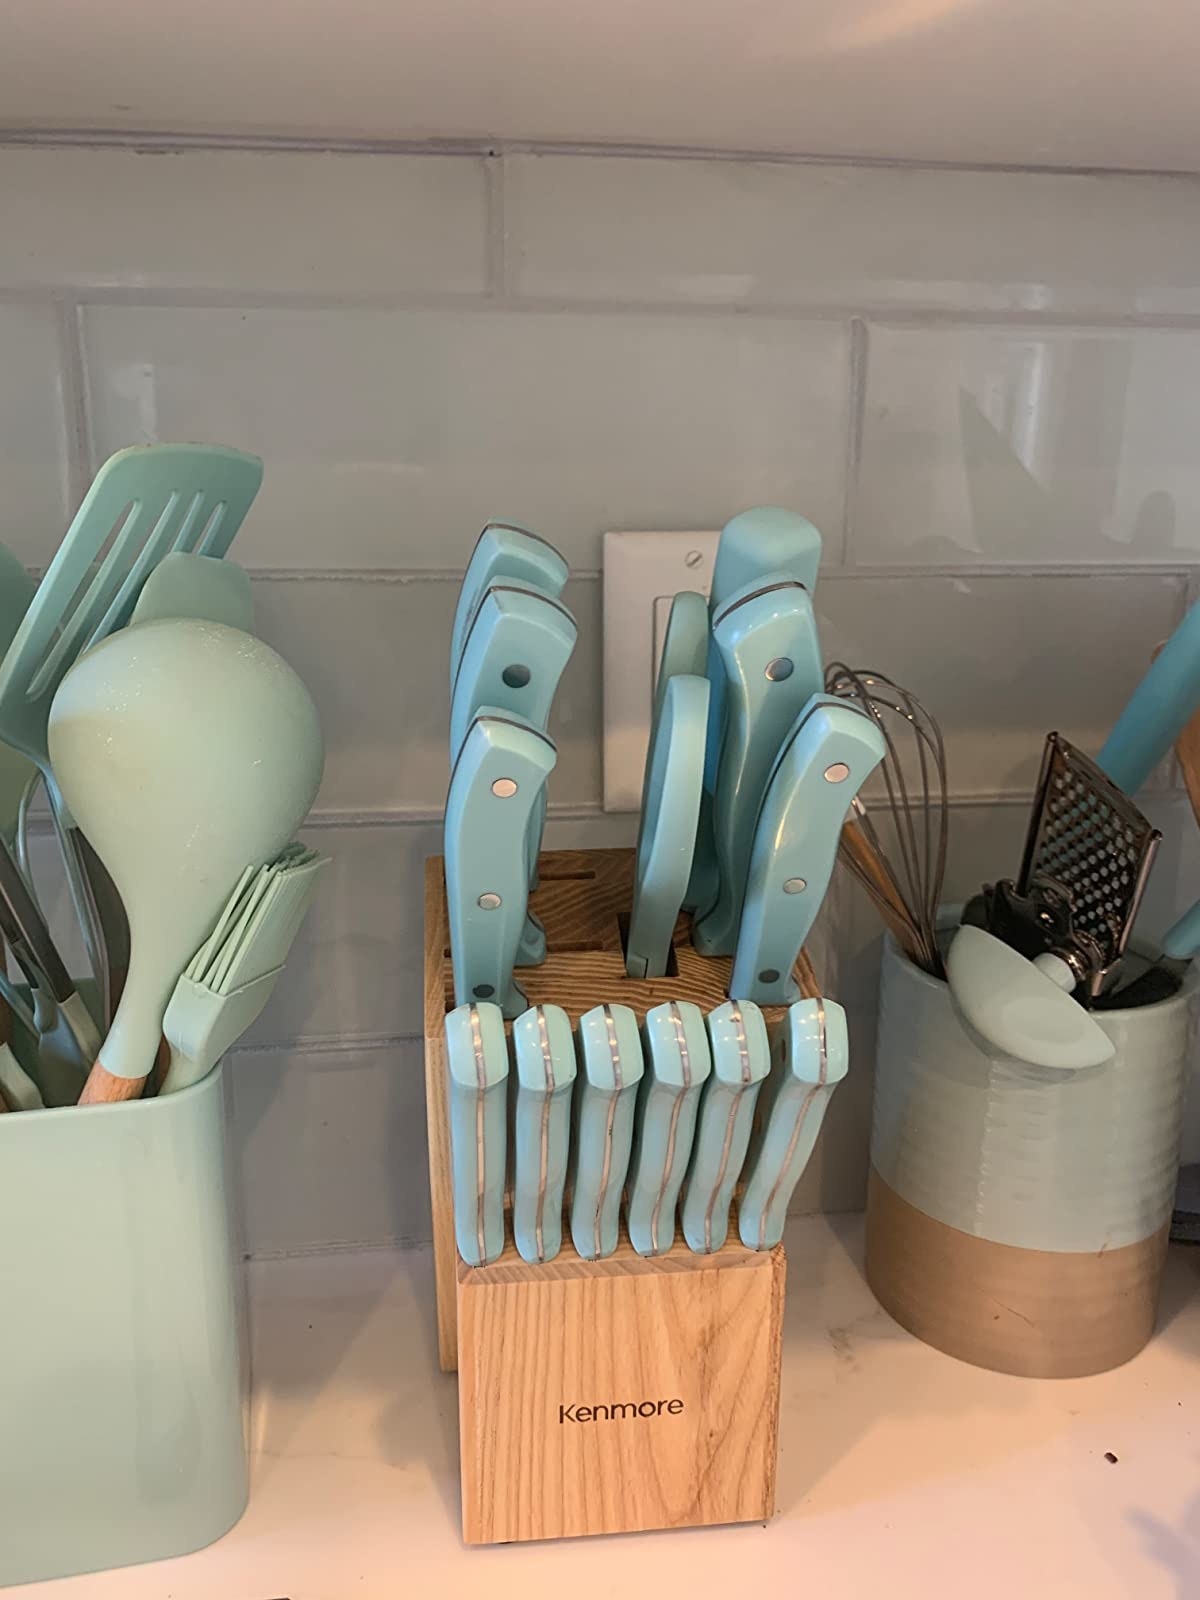 Reviewer image of blue knife set